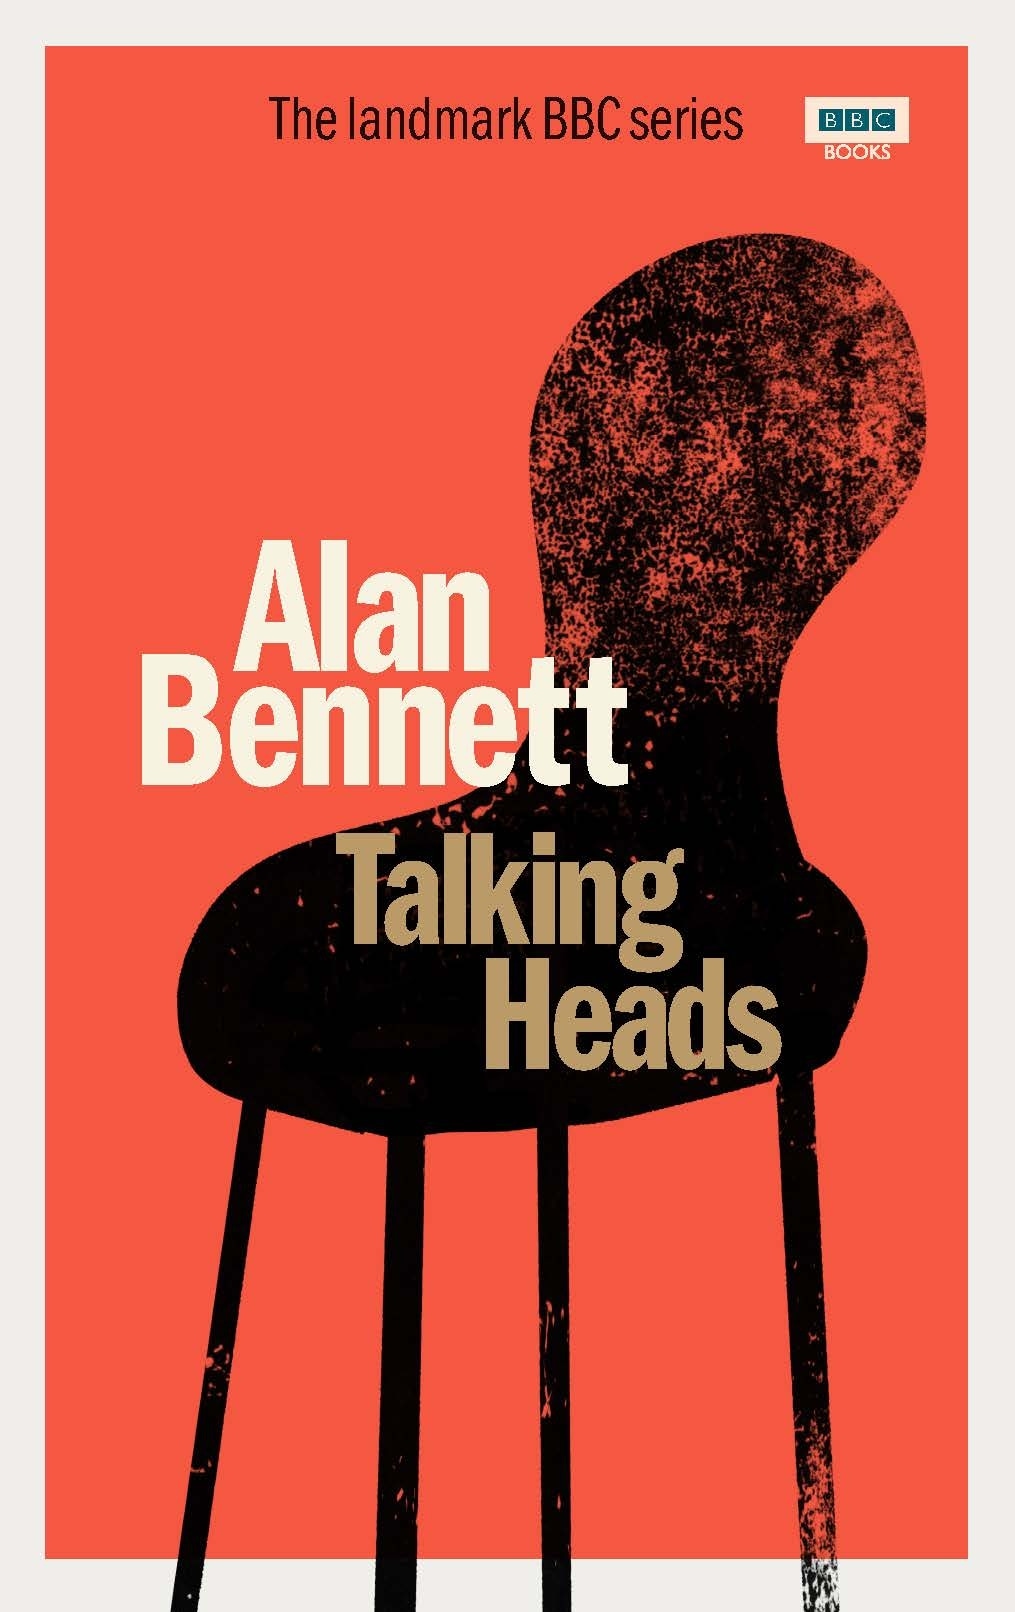 Book “Talking Heads” by Alan Bennett — October 8, 2020